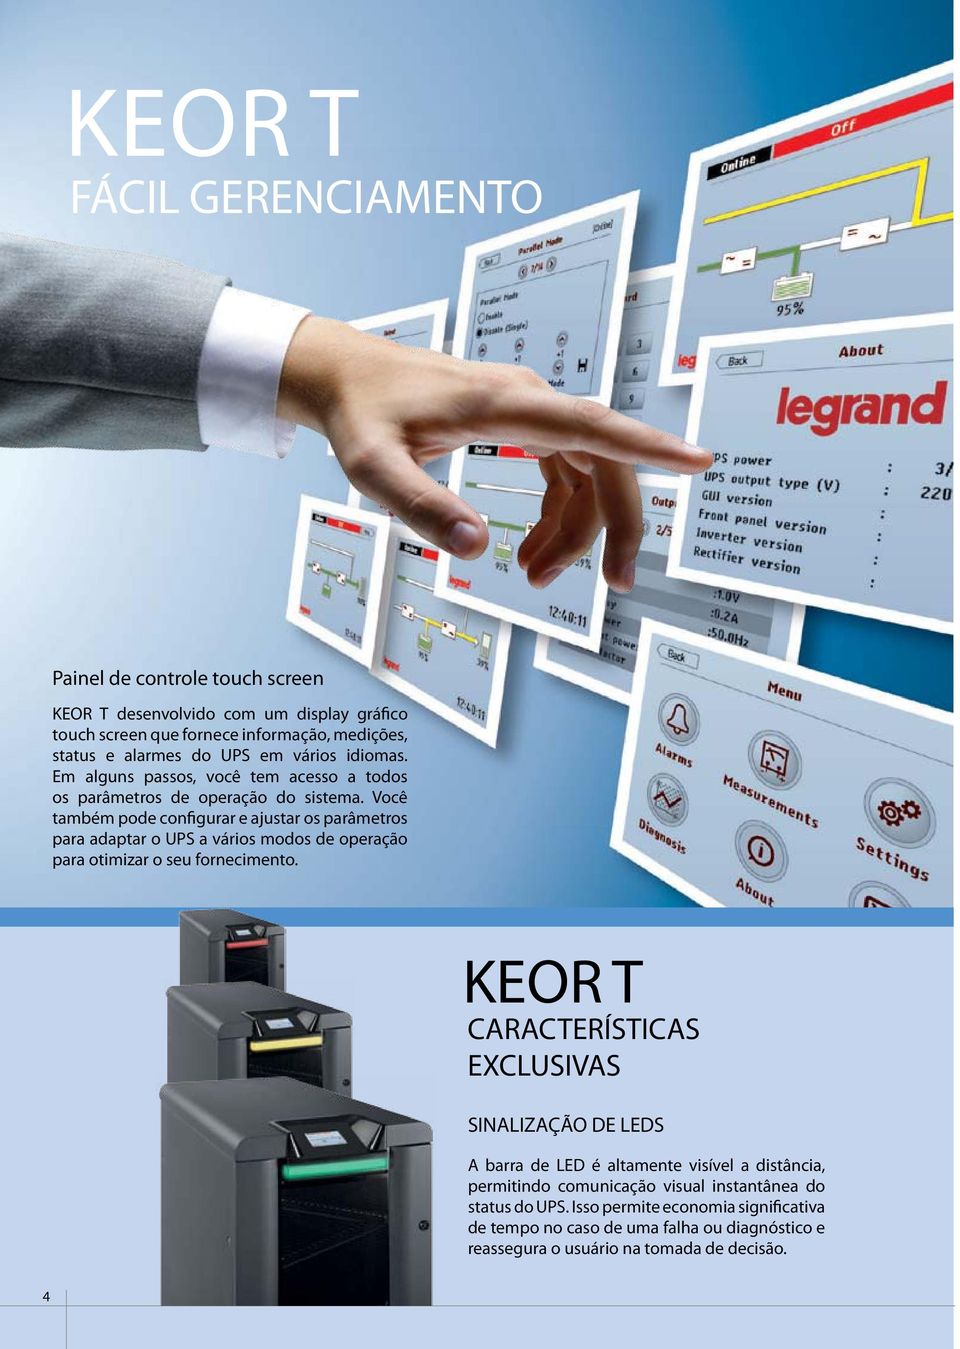 KEOR T desenvolvido com um display gráfico touch screen que fornece informação, medições, status e alarmes do UPS em vários idiomas.